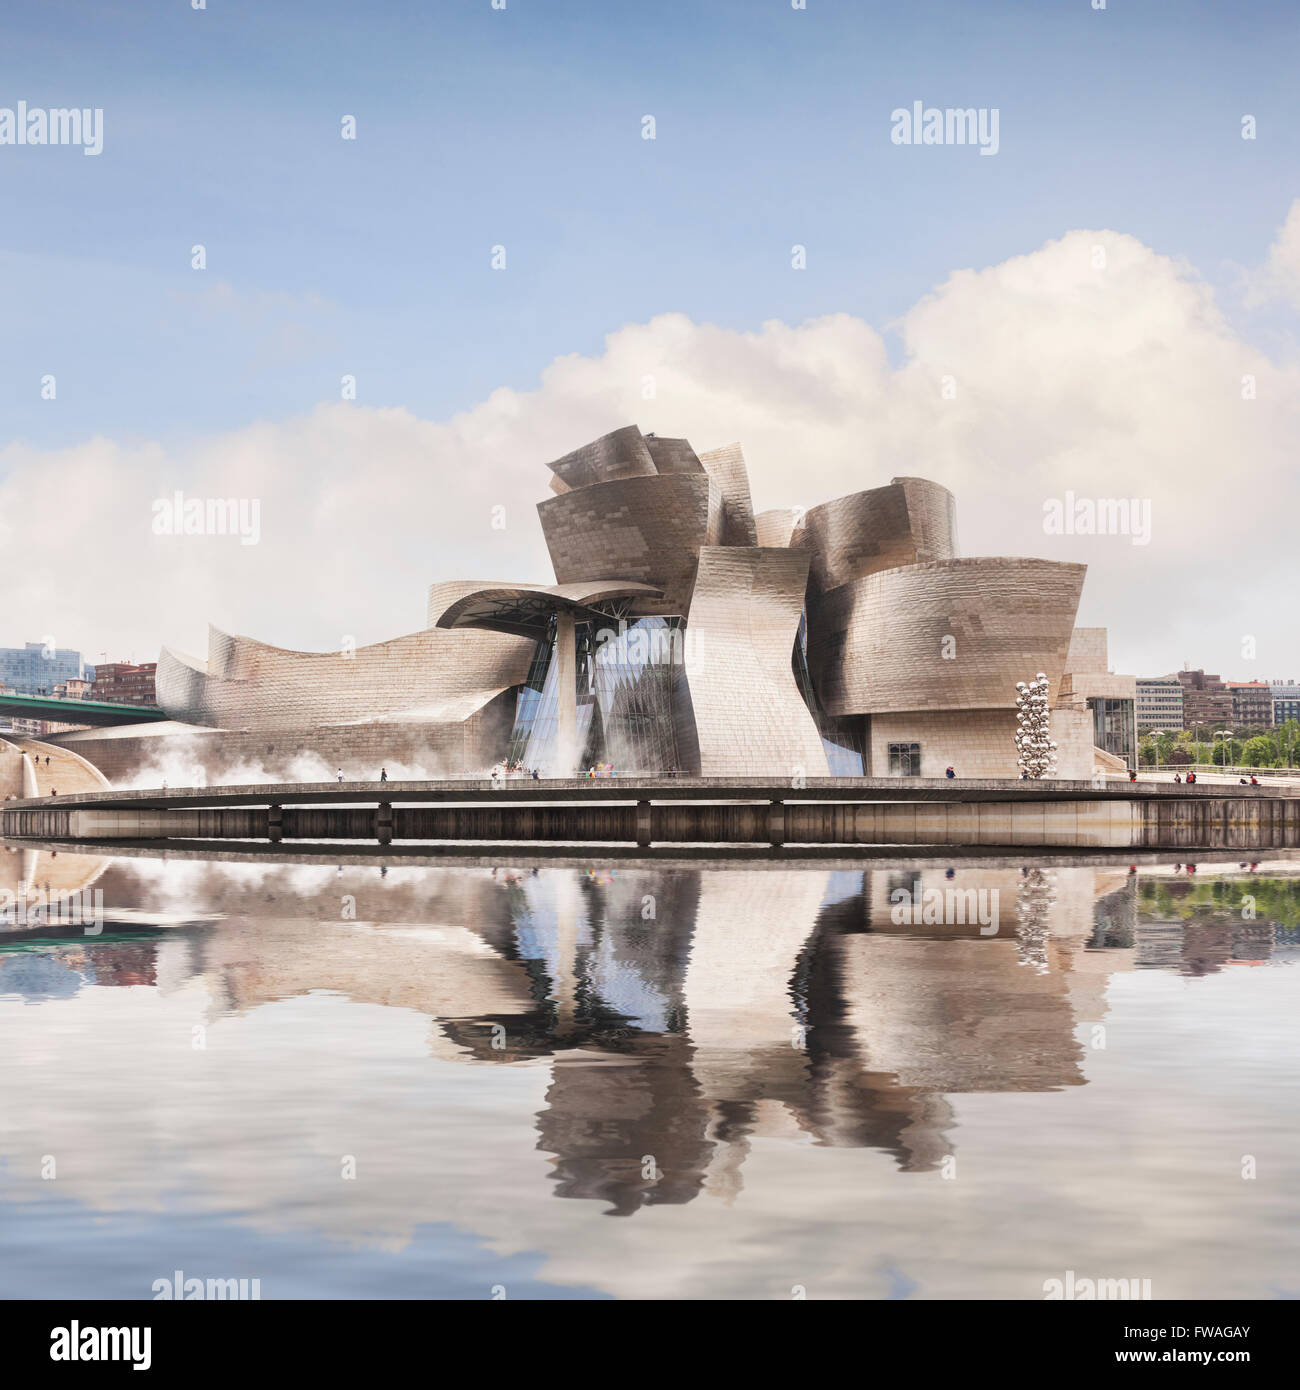 Le Musée Guggenheim de Frank Gehry reflétée dans la rivière Nervión, Bilbao, Pays Basque, Espagne Banque D'Images